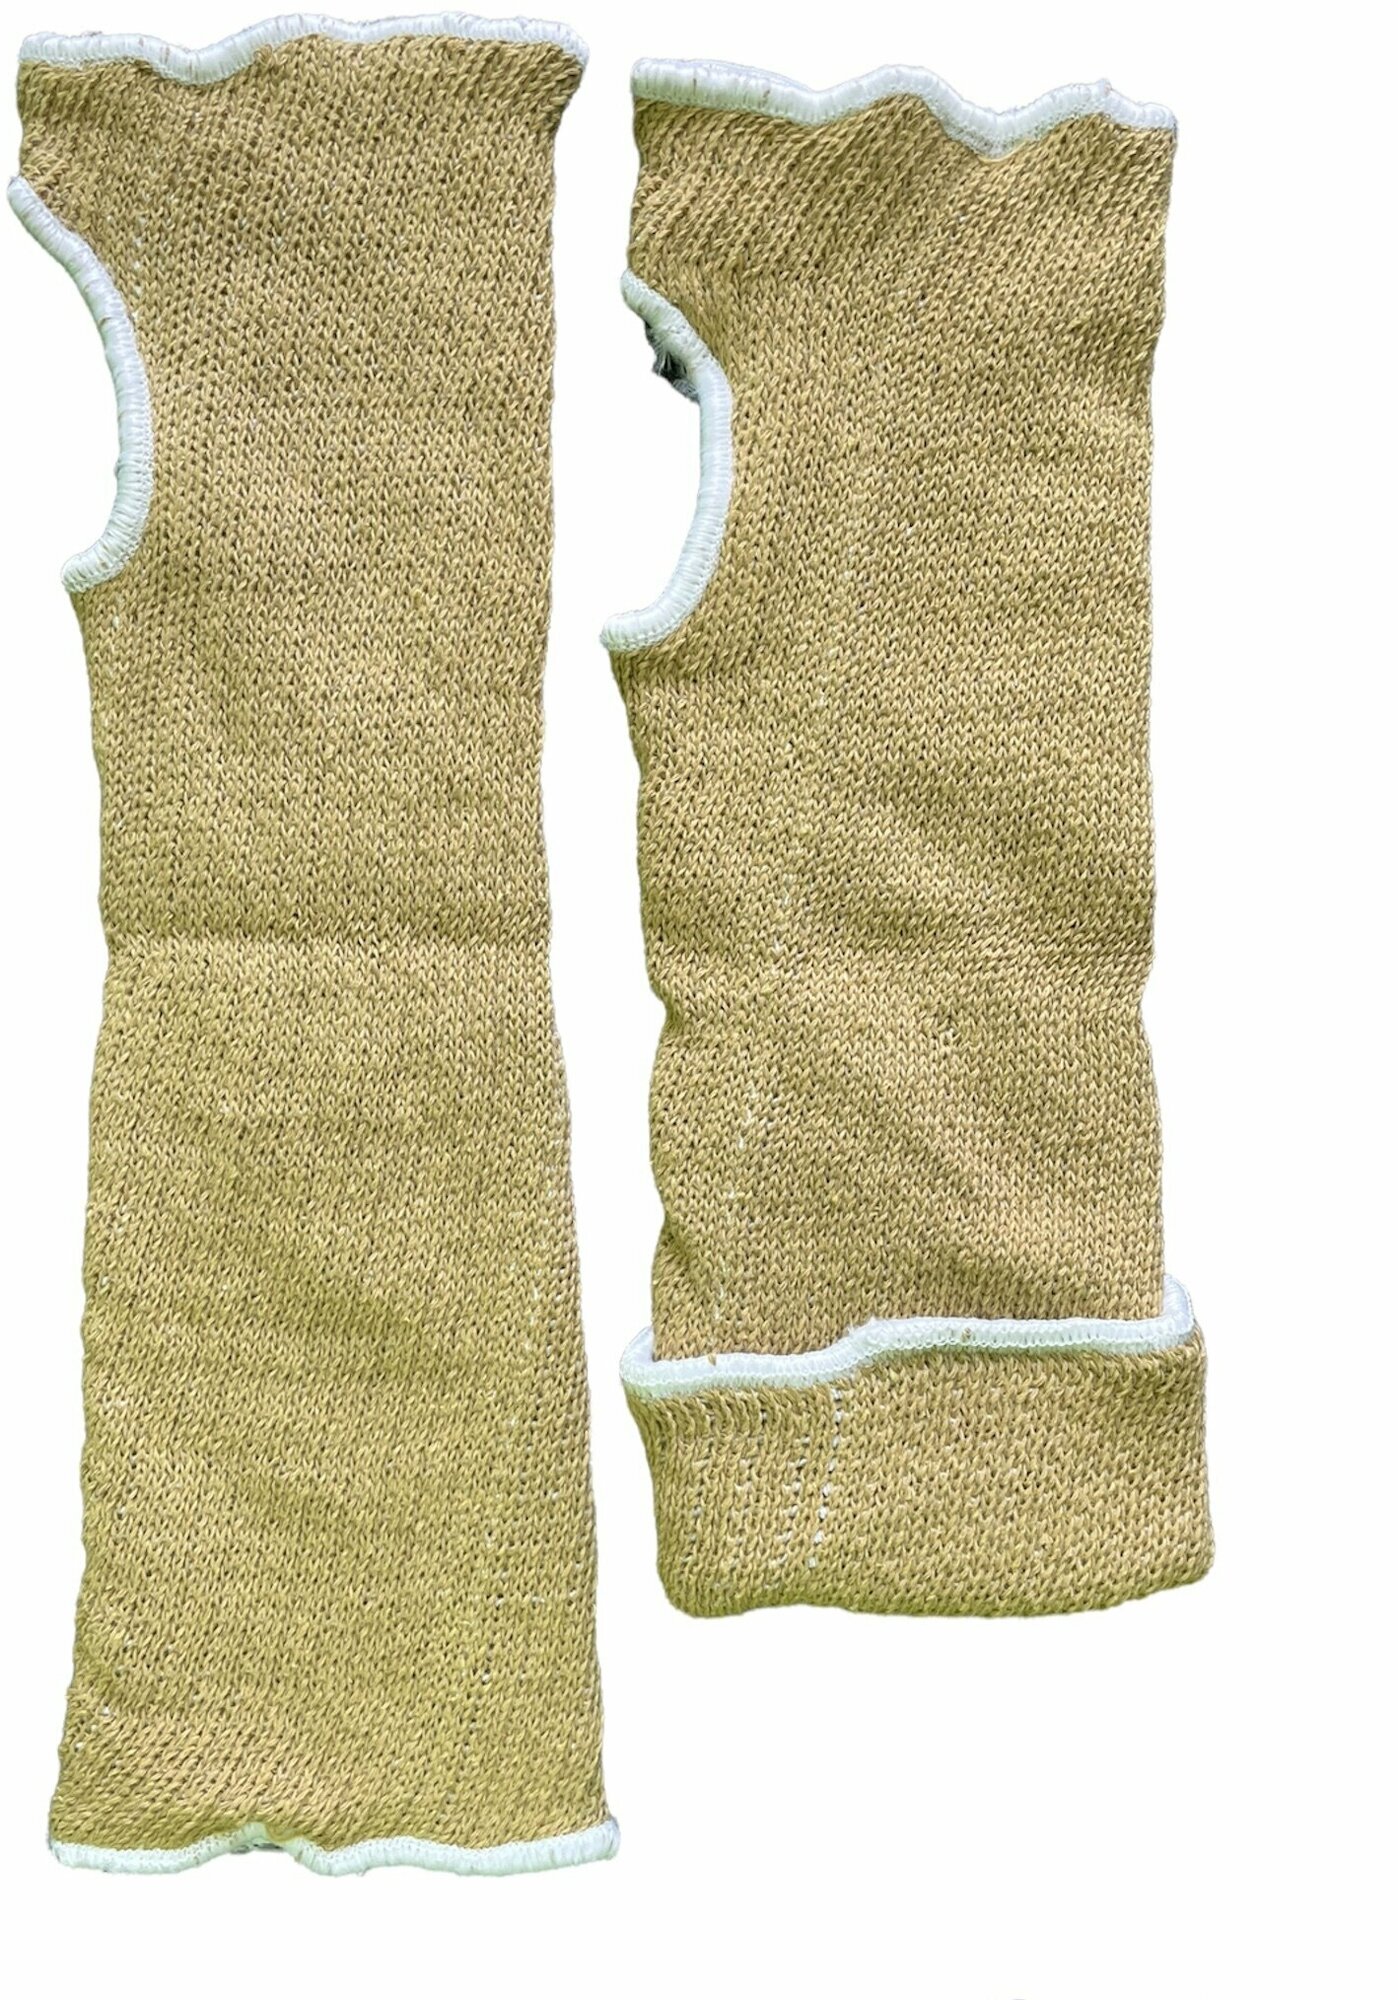 Кевларовые нарукавники HandSafe для защиты рук от порезов и высокой температуры - 1 пара - фотография № 6